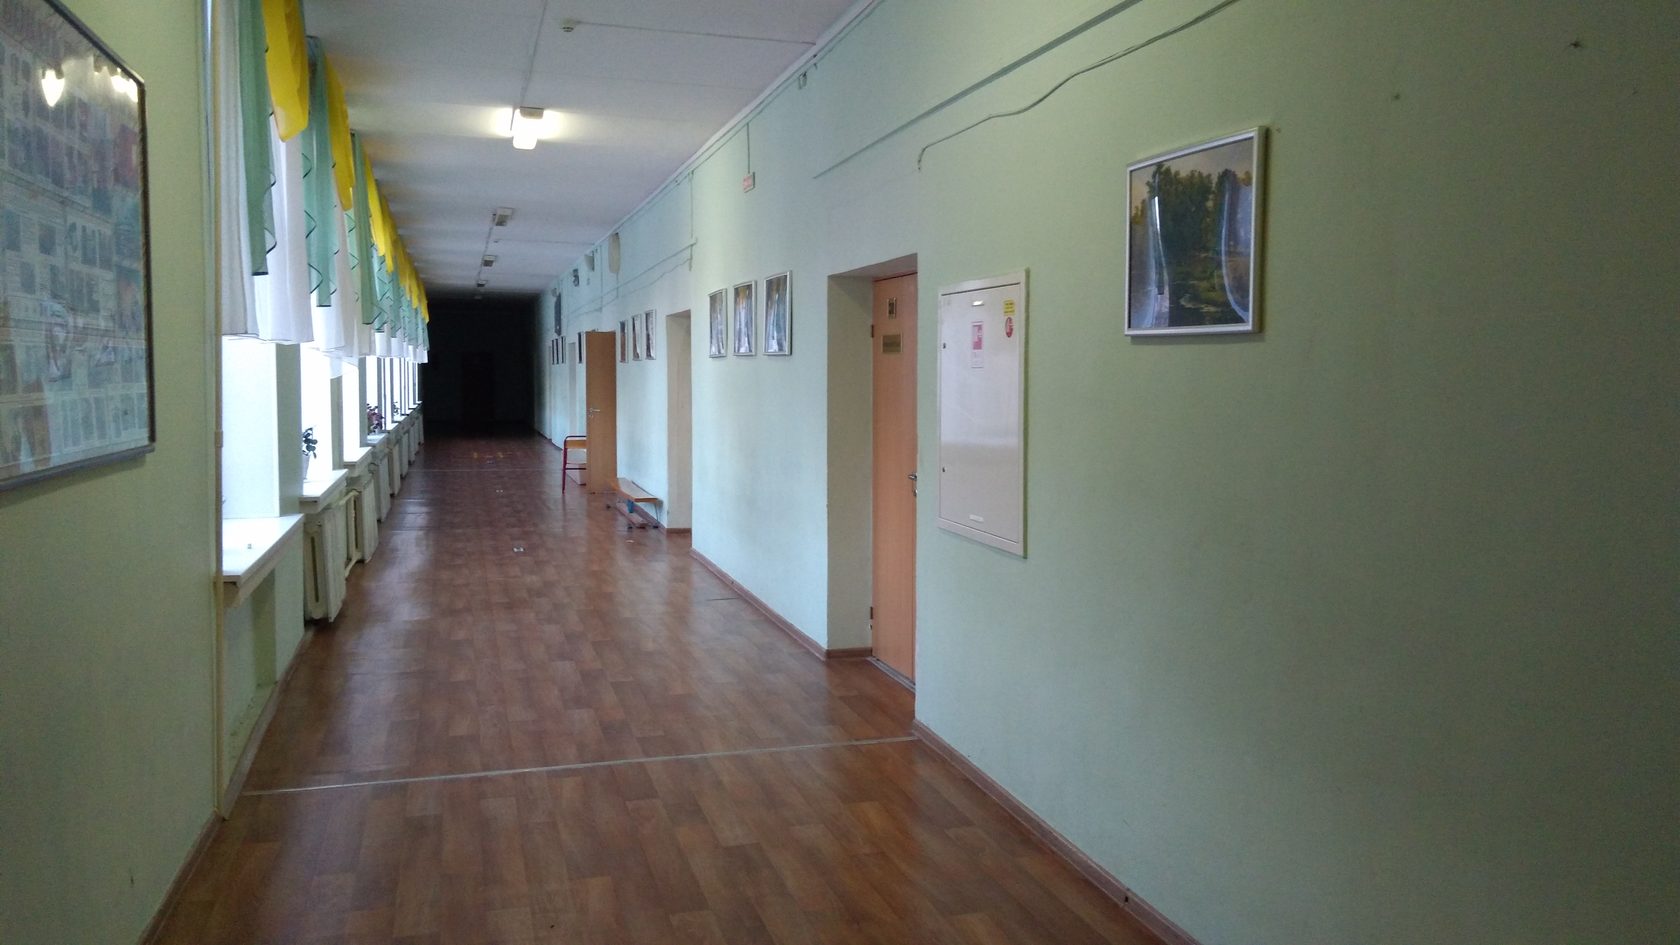 фотографии школьных коридоров